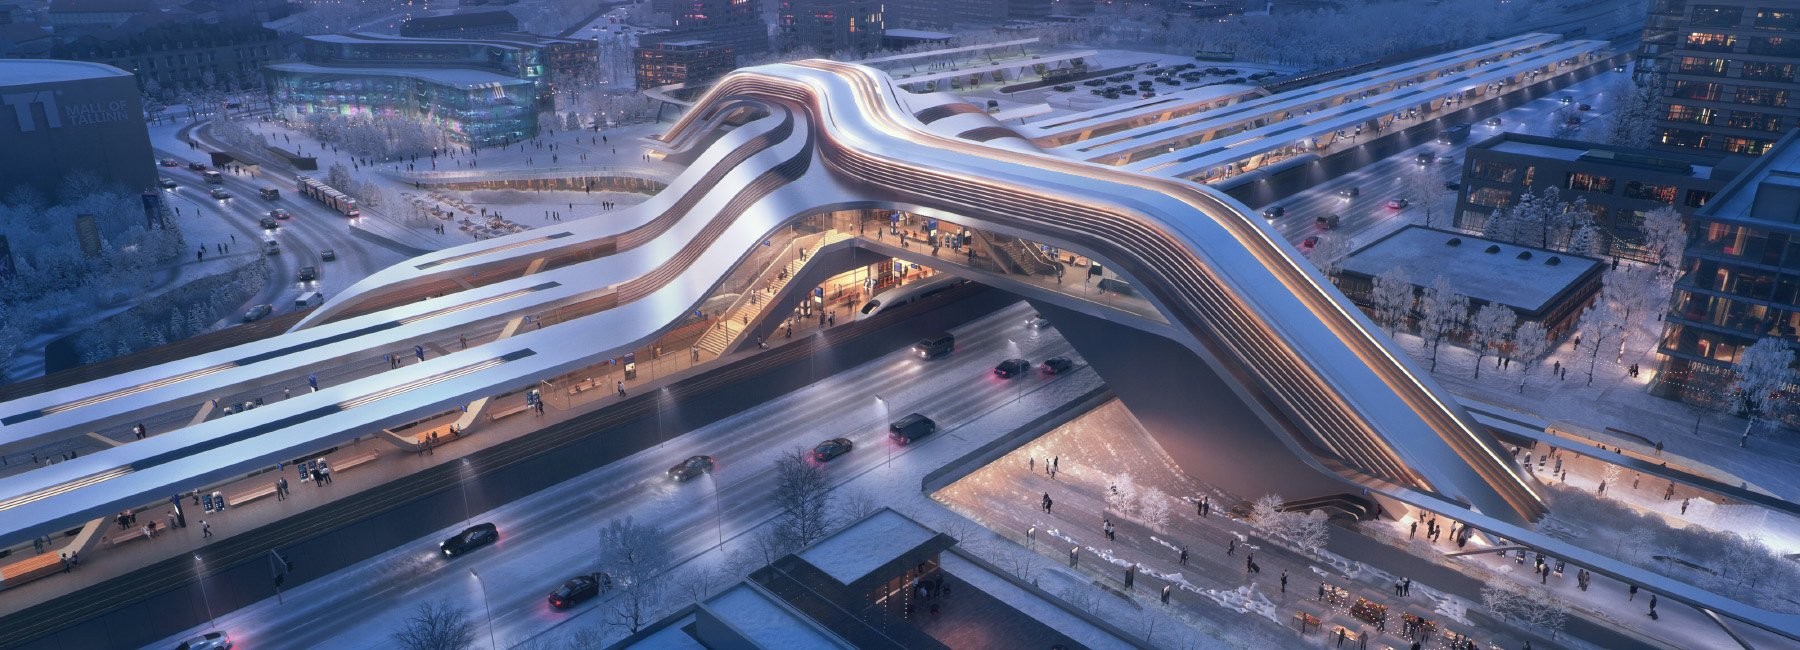 Zaha Hadid Architects assina terminal ferroviário que funciona como ponte (Foto: Divulgação)